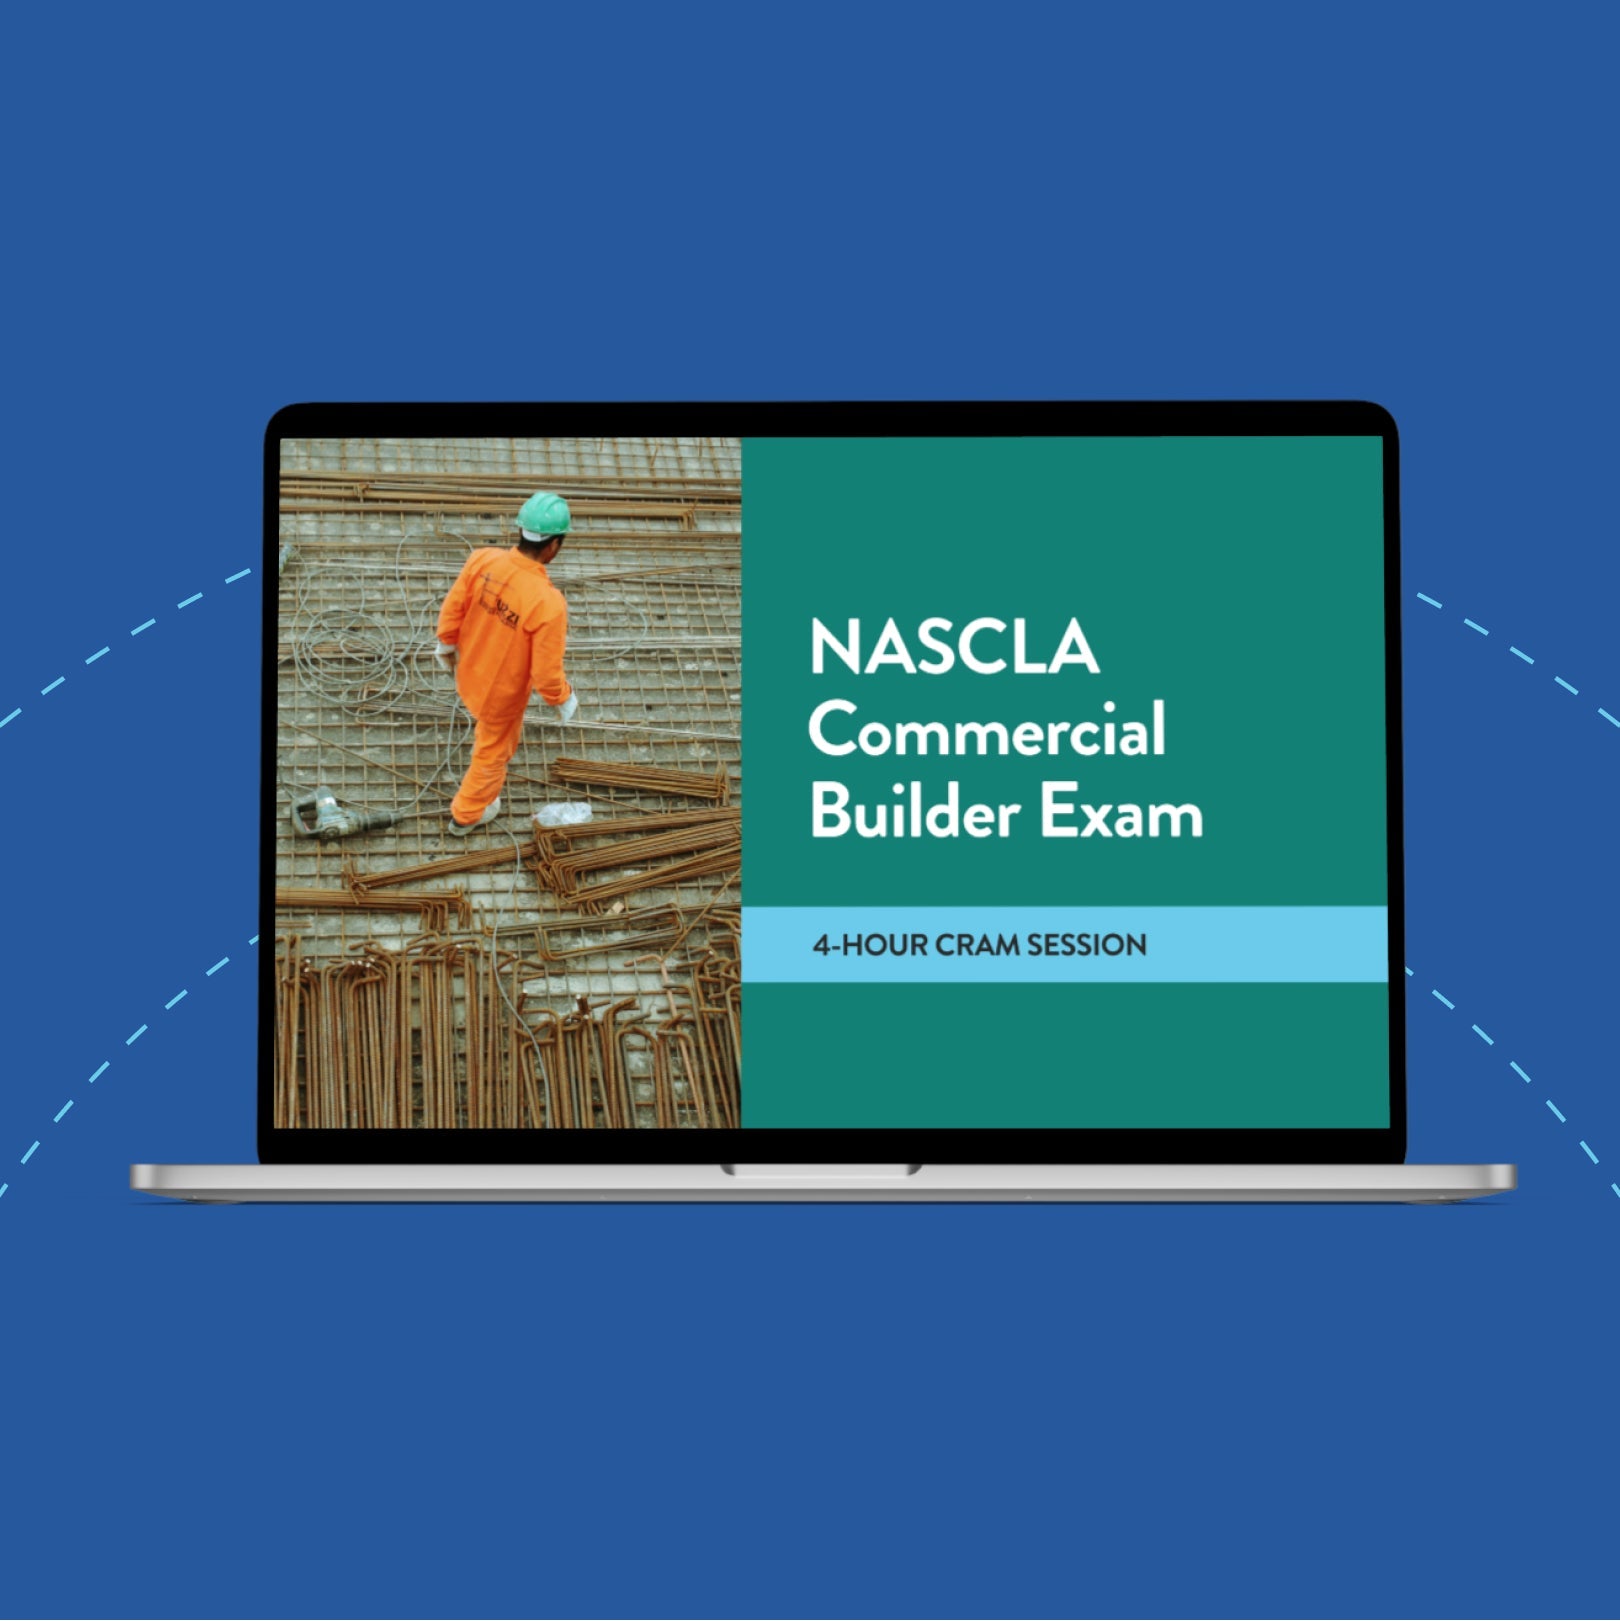 NASCLA Commercial Builder Exam 4-Hour Cram Session